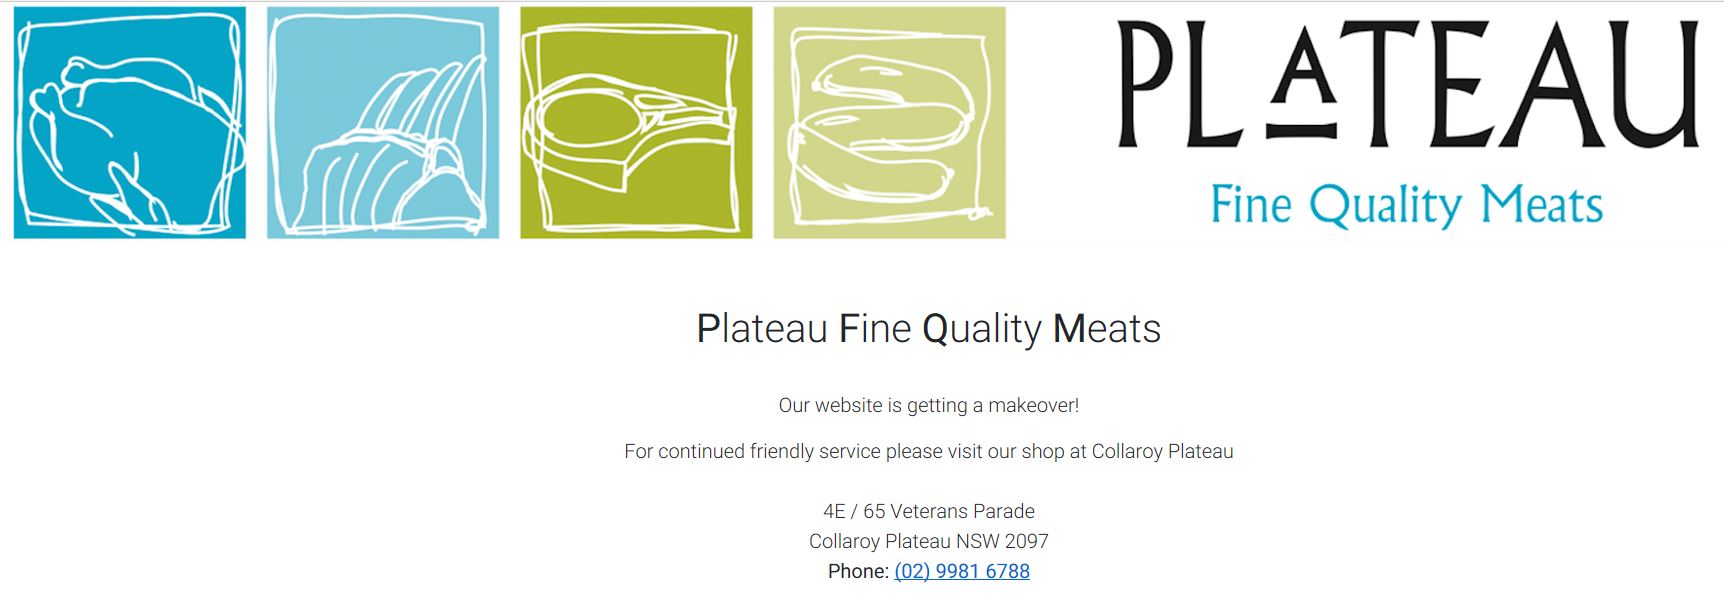 Plateau Meats